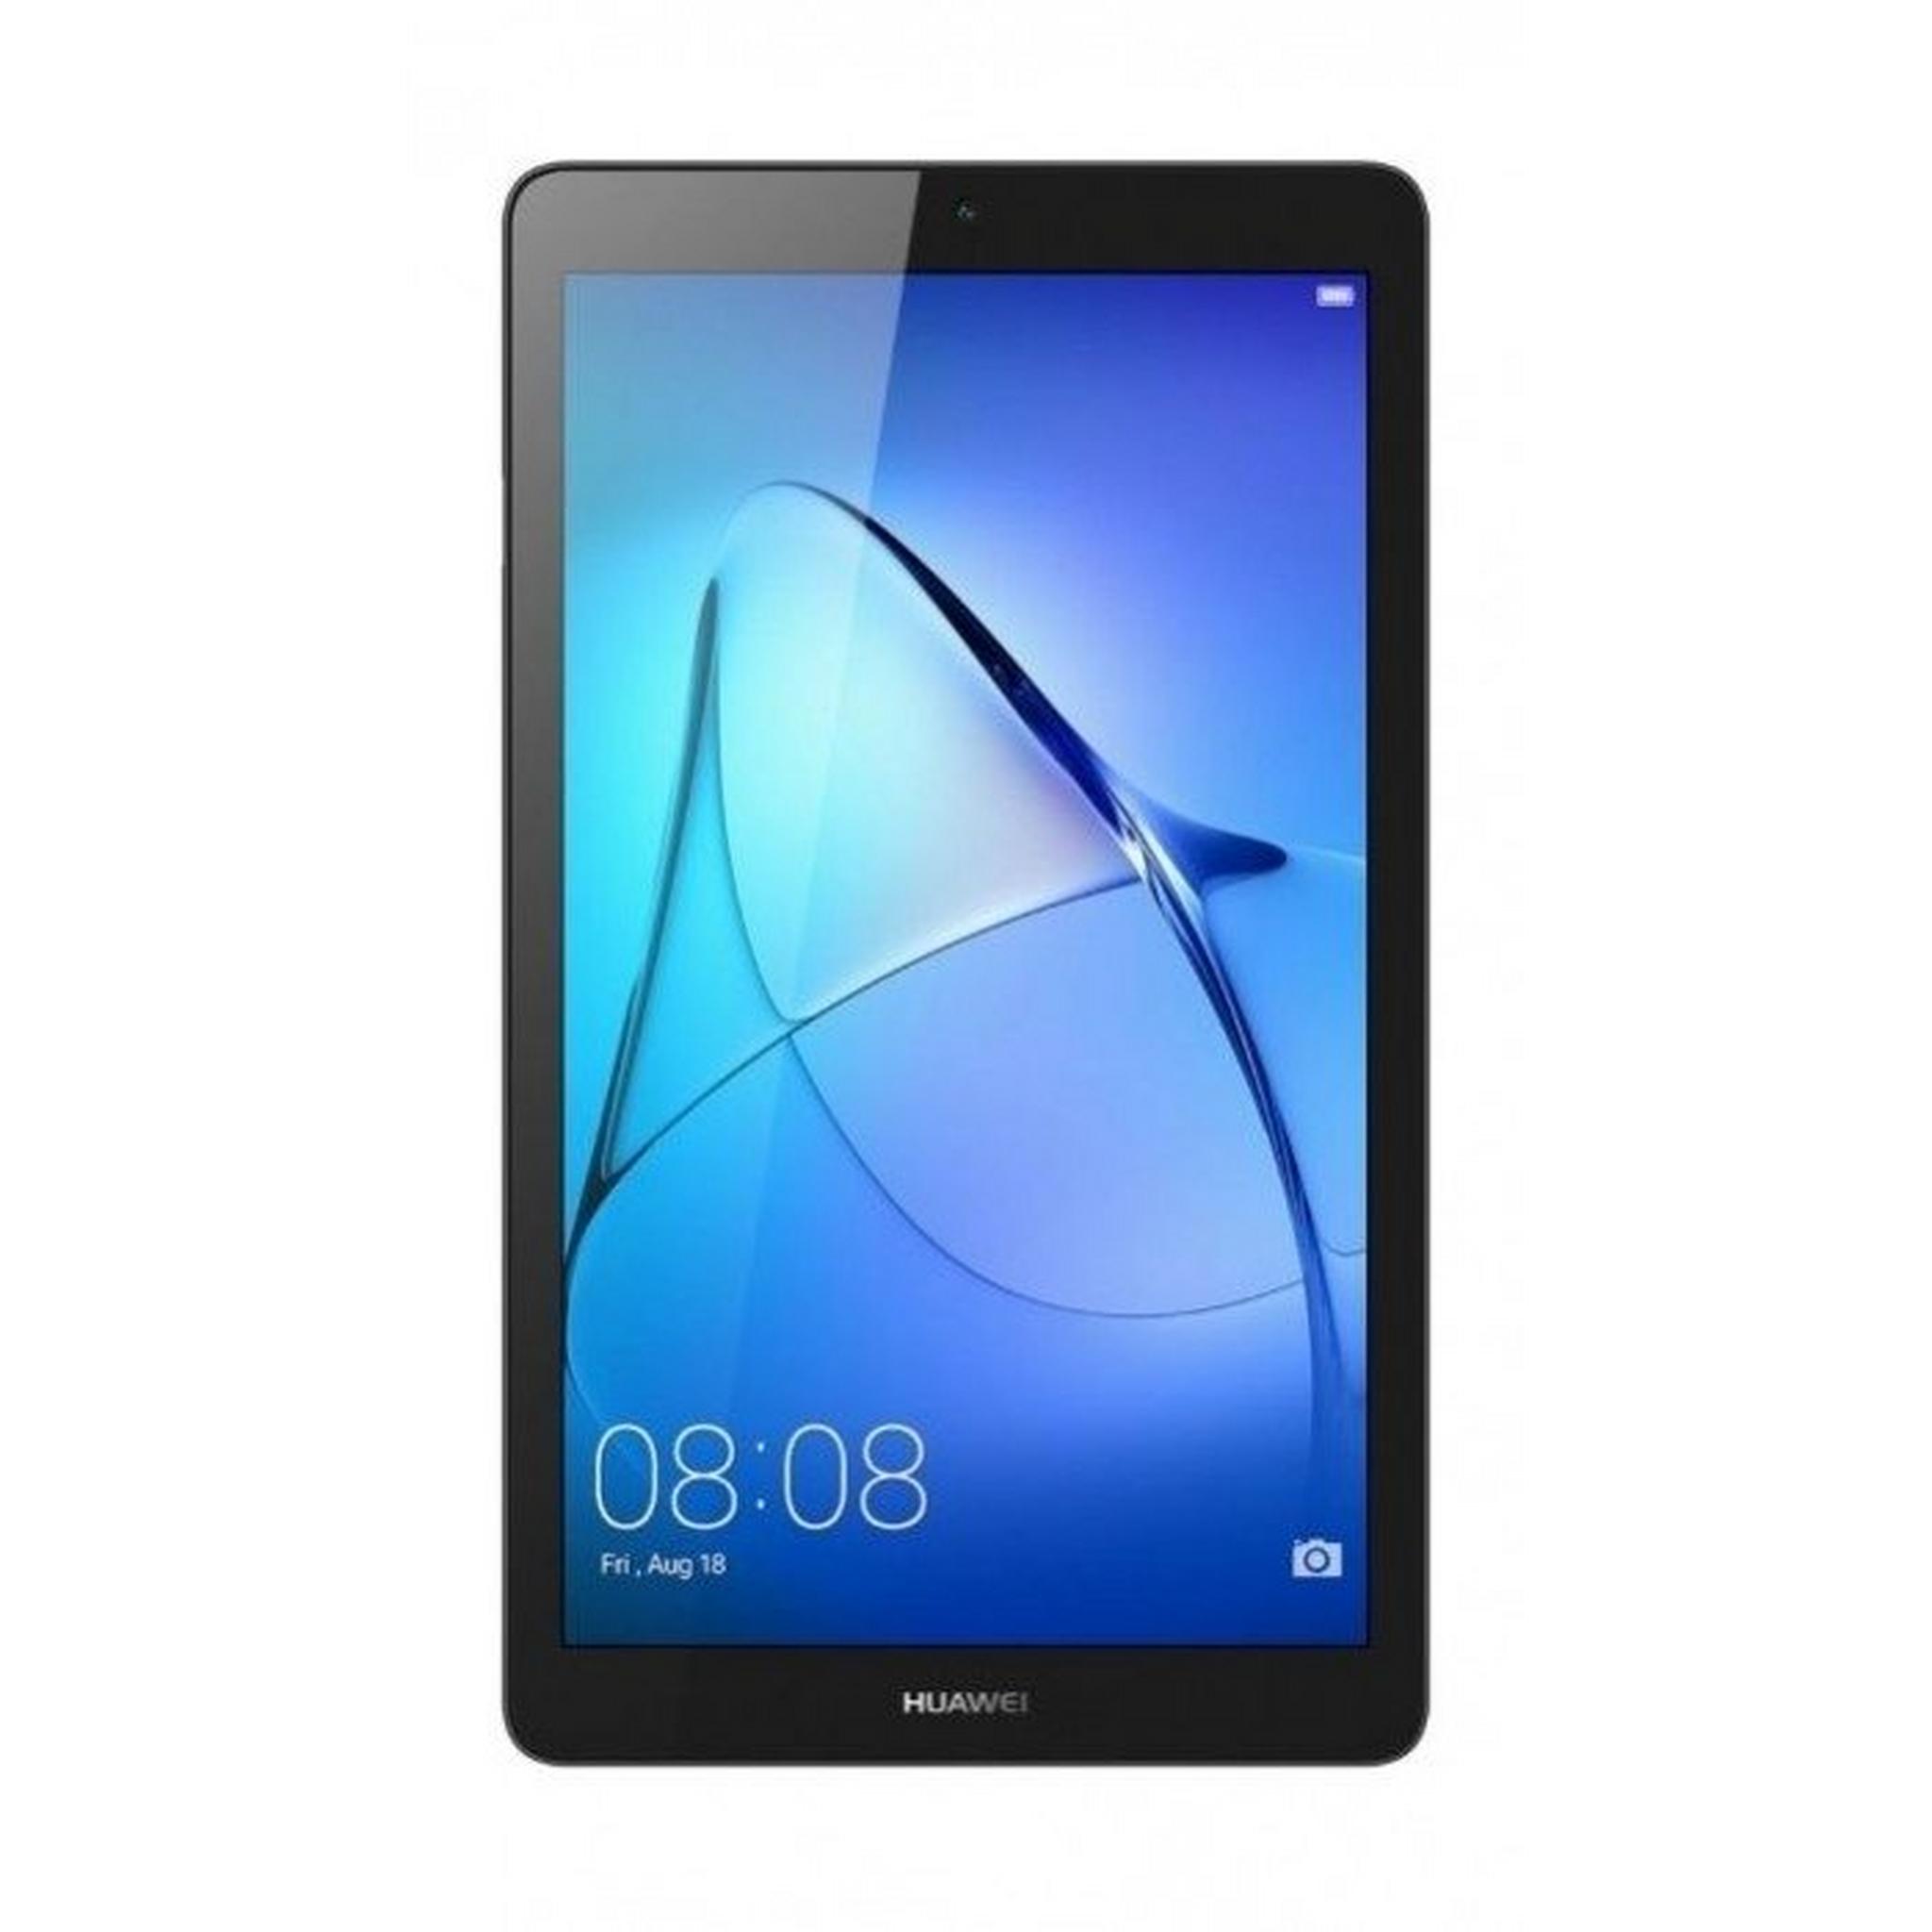 Huawei MediaPad T3 7" 16GB WiFi Only Kids Tablet - Silver